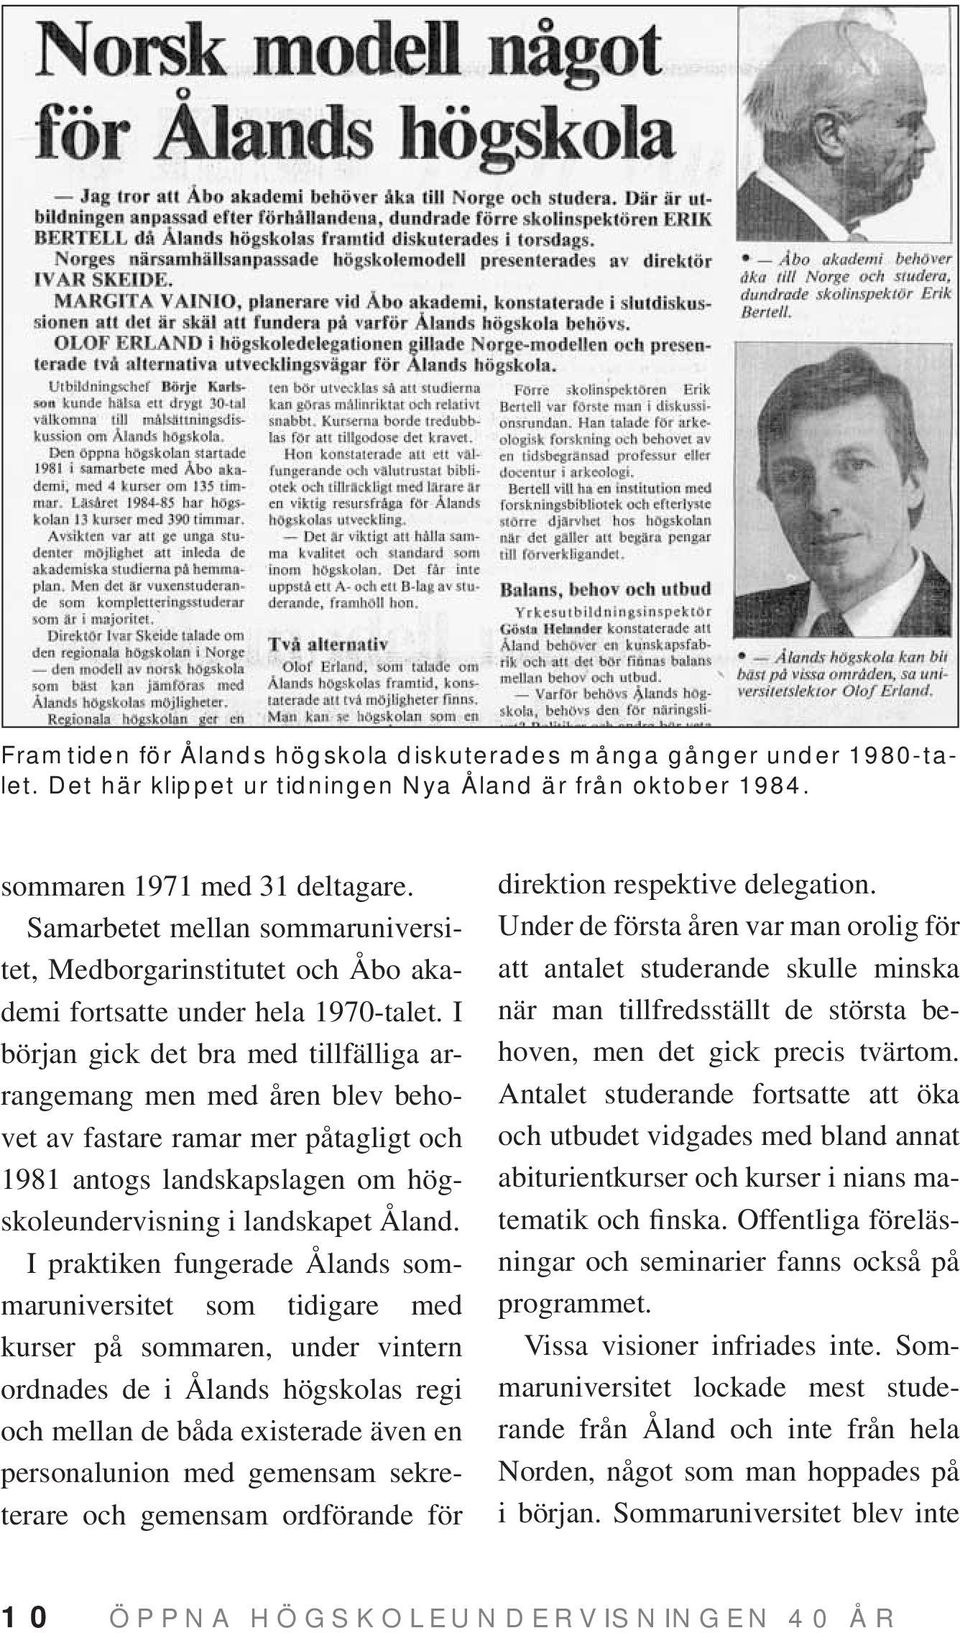 I början gick det bra med tillfälliga arrangemang men med åren blev behovet av fastare ramar mer påtagligt och 1981 antogs landskapslagen om högskoleundervisning i landskapet Åland.